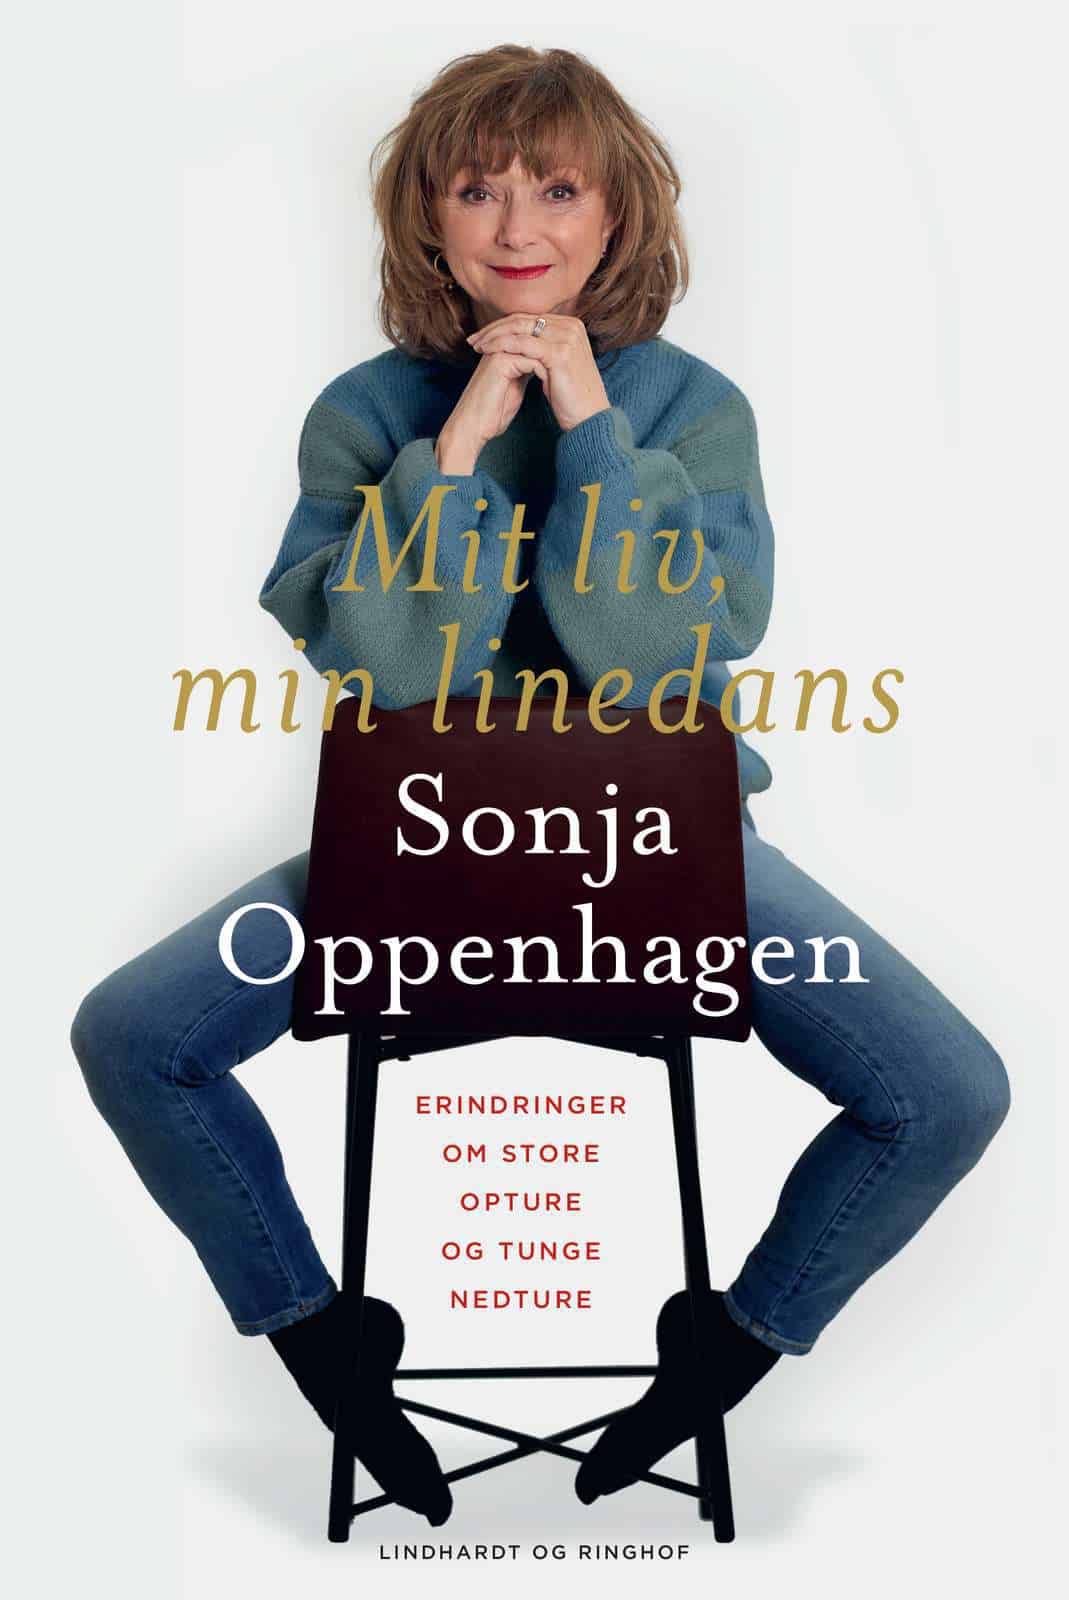 Mit liv, min linedans. Sonja Oppenhagens erindringer. Ny bog.